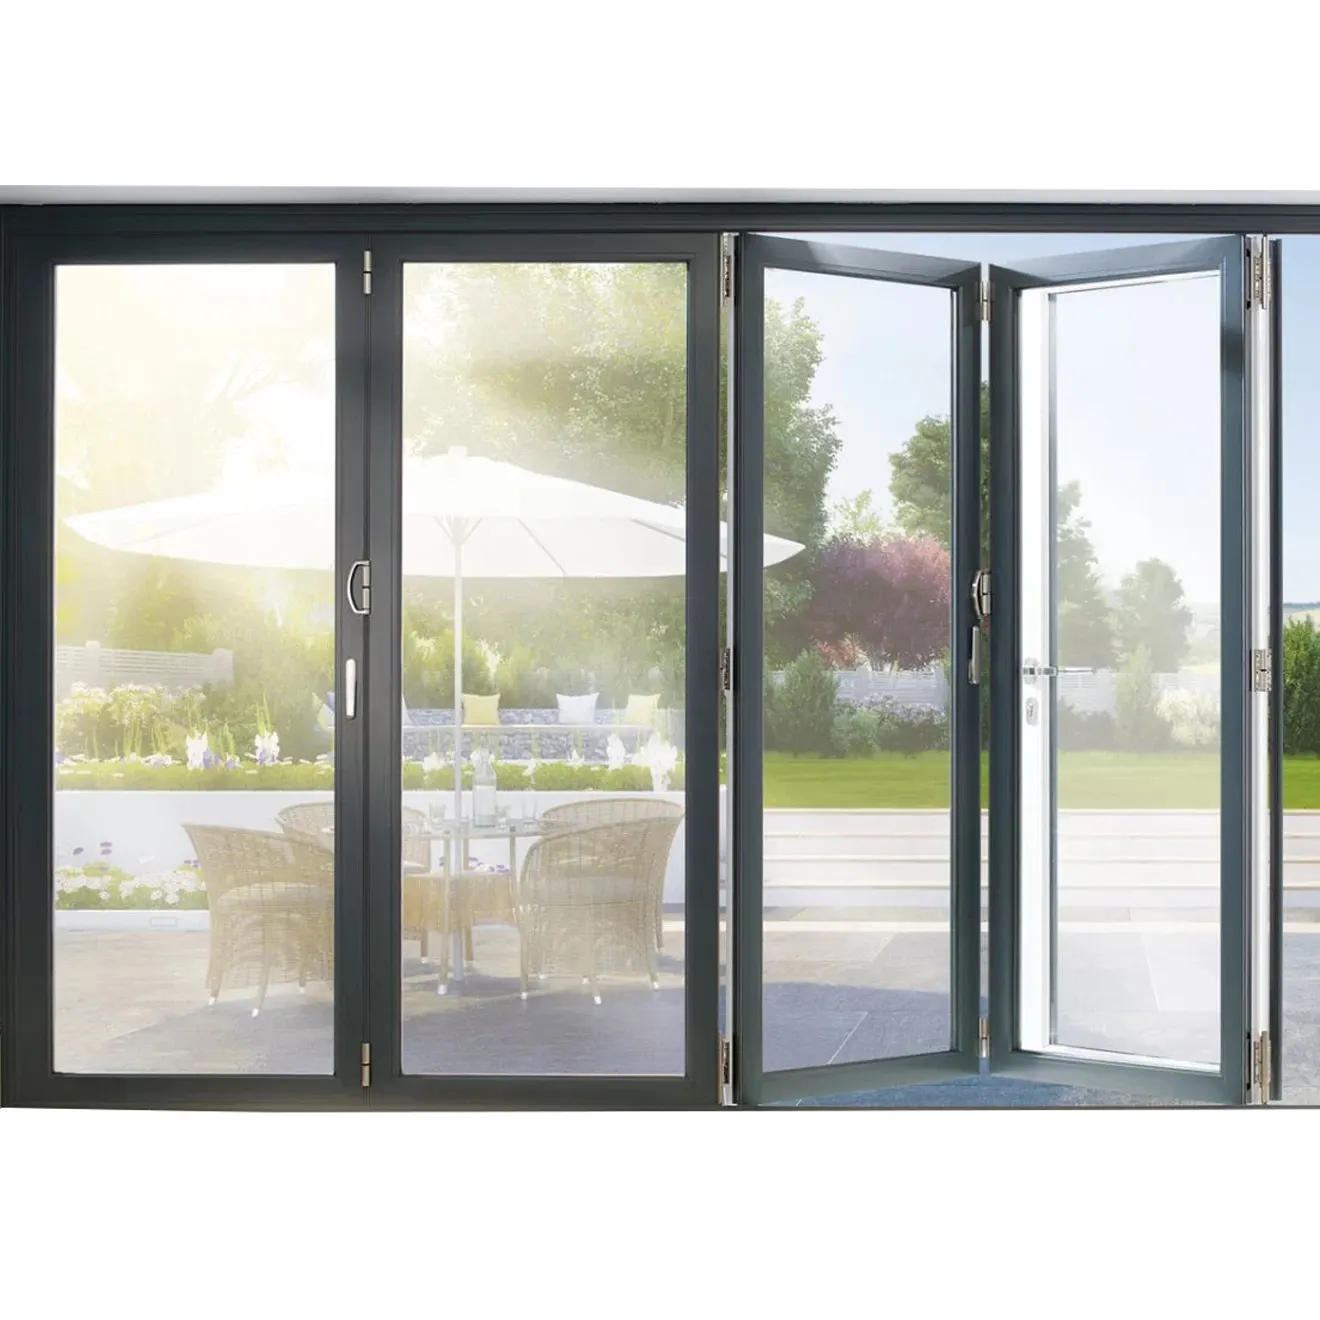 As2047-puerta plegable de aleación de aluminio para exterior, puertas plegables para patio, a prueba de hurones australianas, 6063-T5